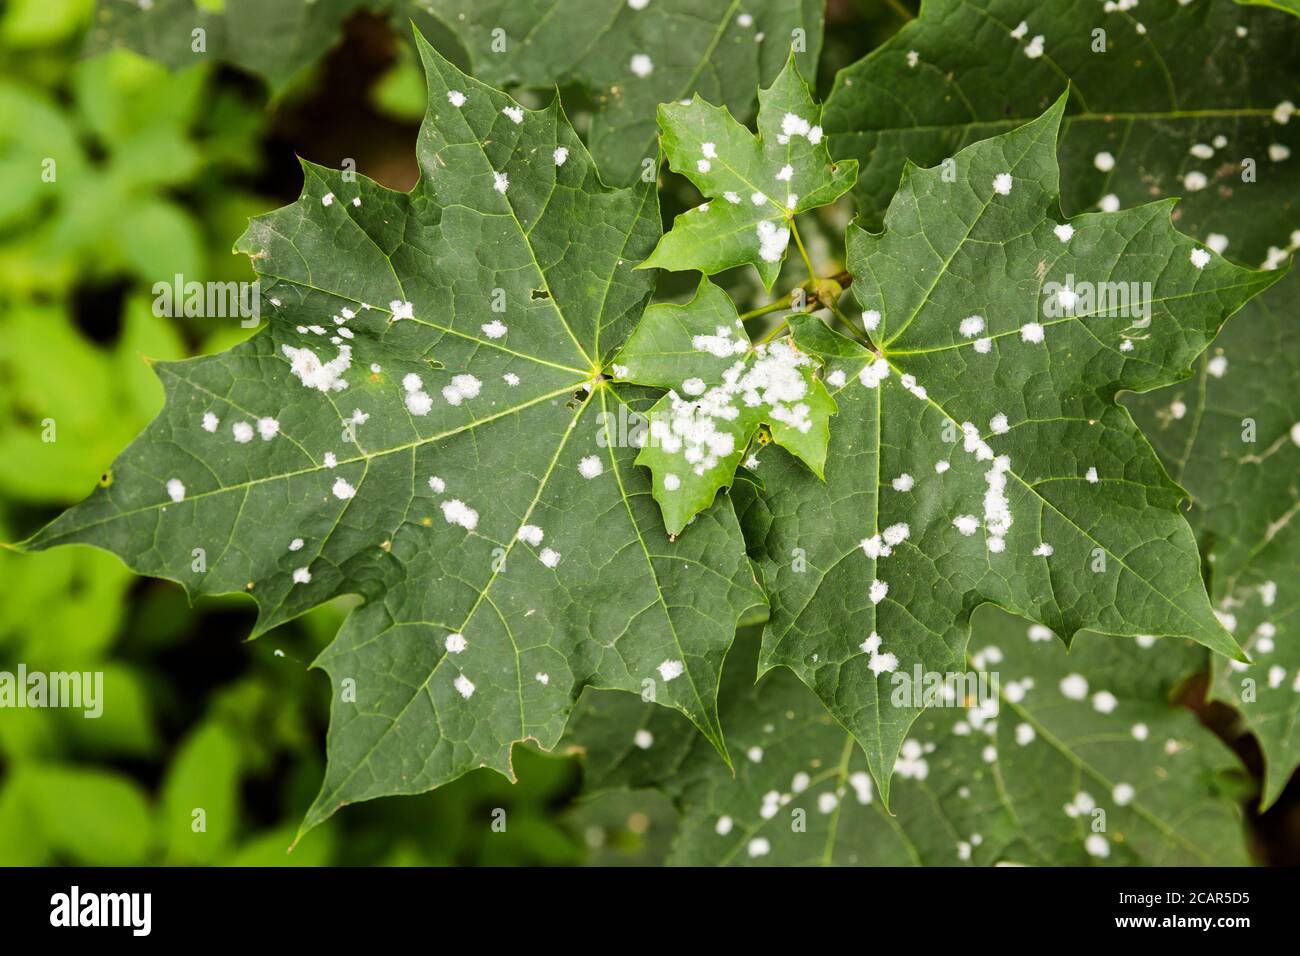 Mehltau auf Ahornblatt. Weiße Flecken von Mehltau auf Ahornbaum. Pathogene Pilze, Phytopathologie, Pflanzenkrankheiten Konzept Stockfoto